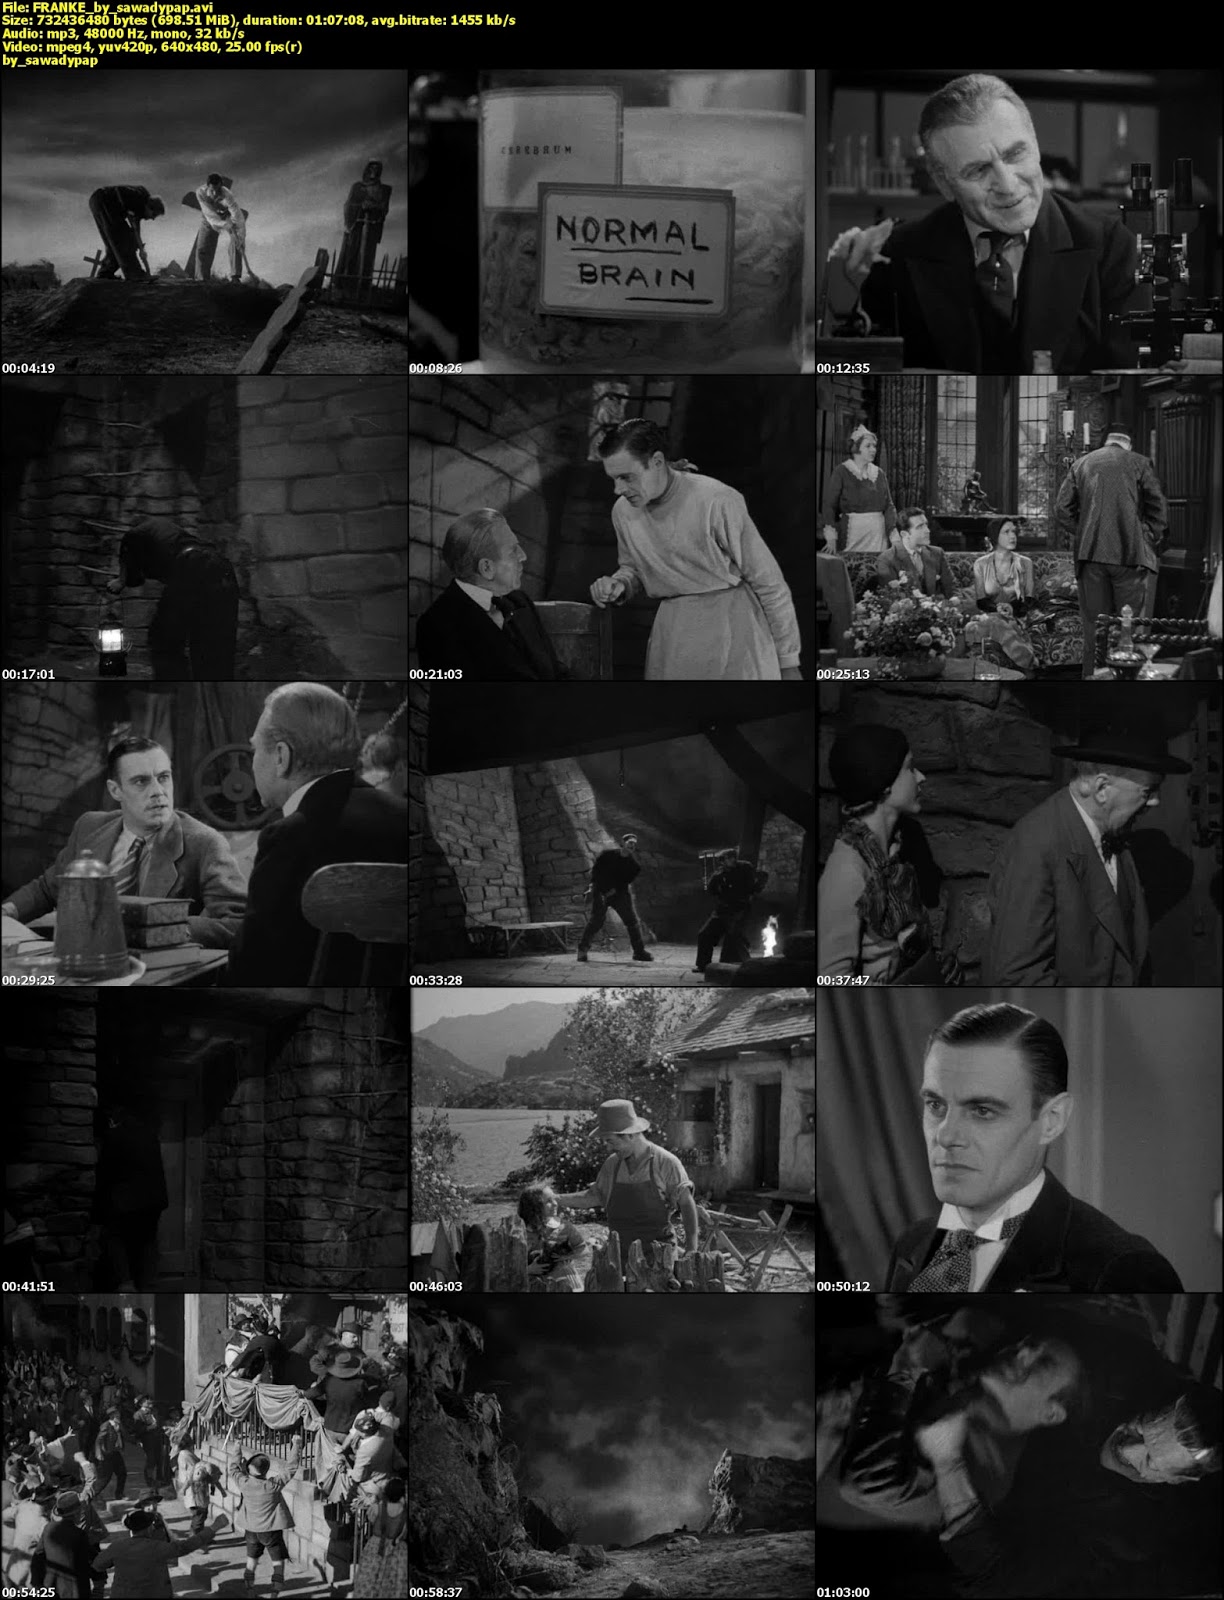 Frankenstein [1931] [DVDRip] [Subtitulada]